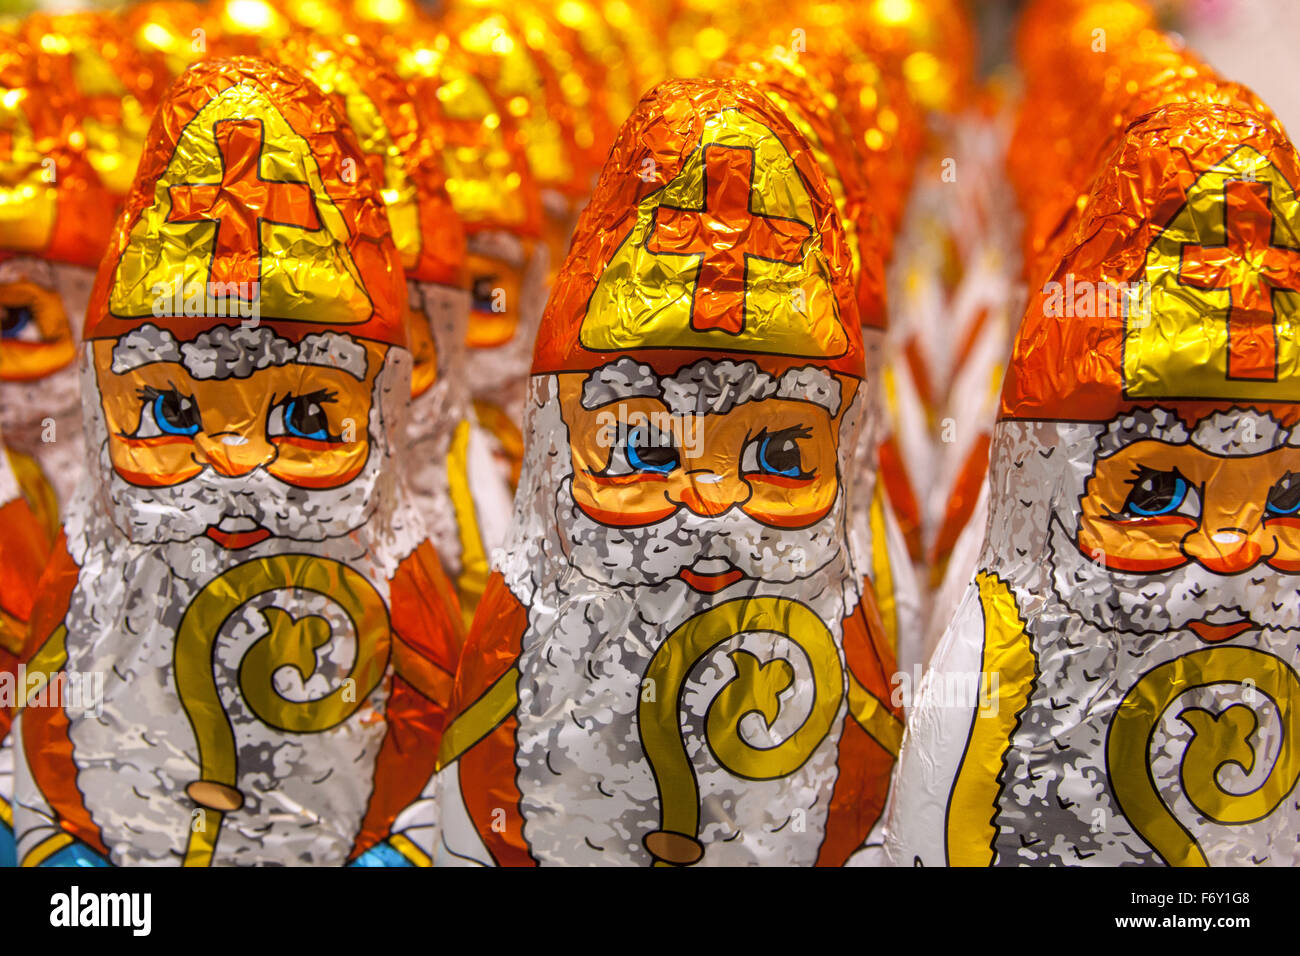 Schokoladen-Figuren von St. Nikolaus Santa in einem Supermarkt angezeigt Regal Stockfoto